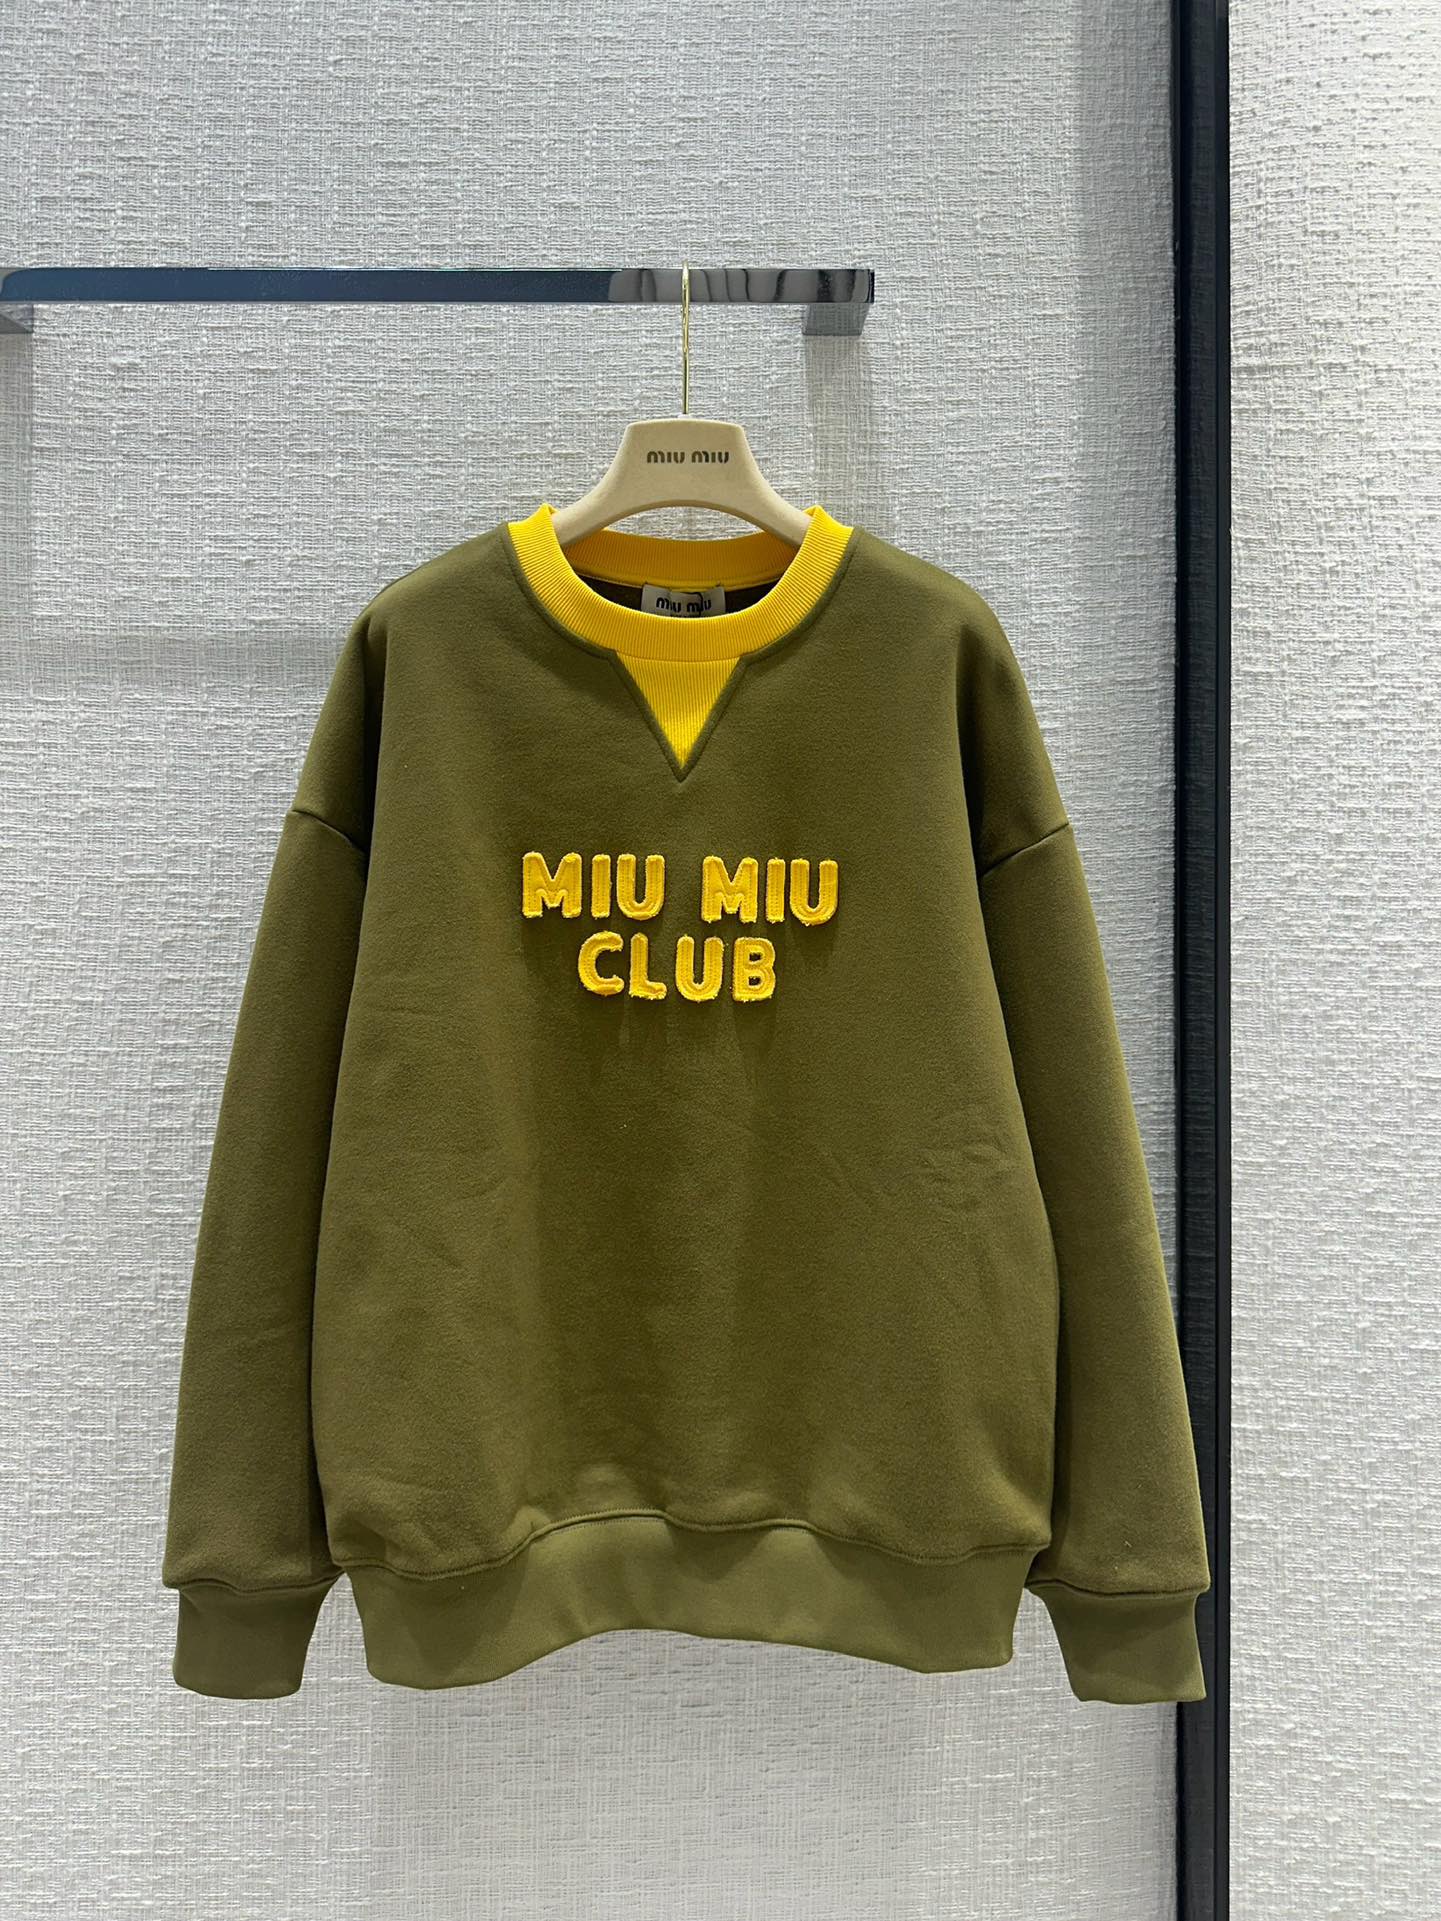 MiuMiu Clothing Sweatshirts Cotton Spring Collection Vintage Casual